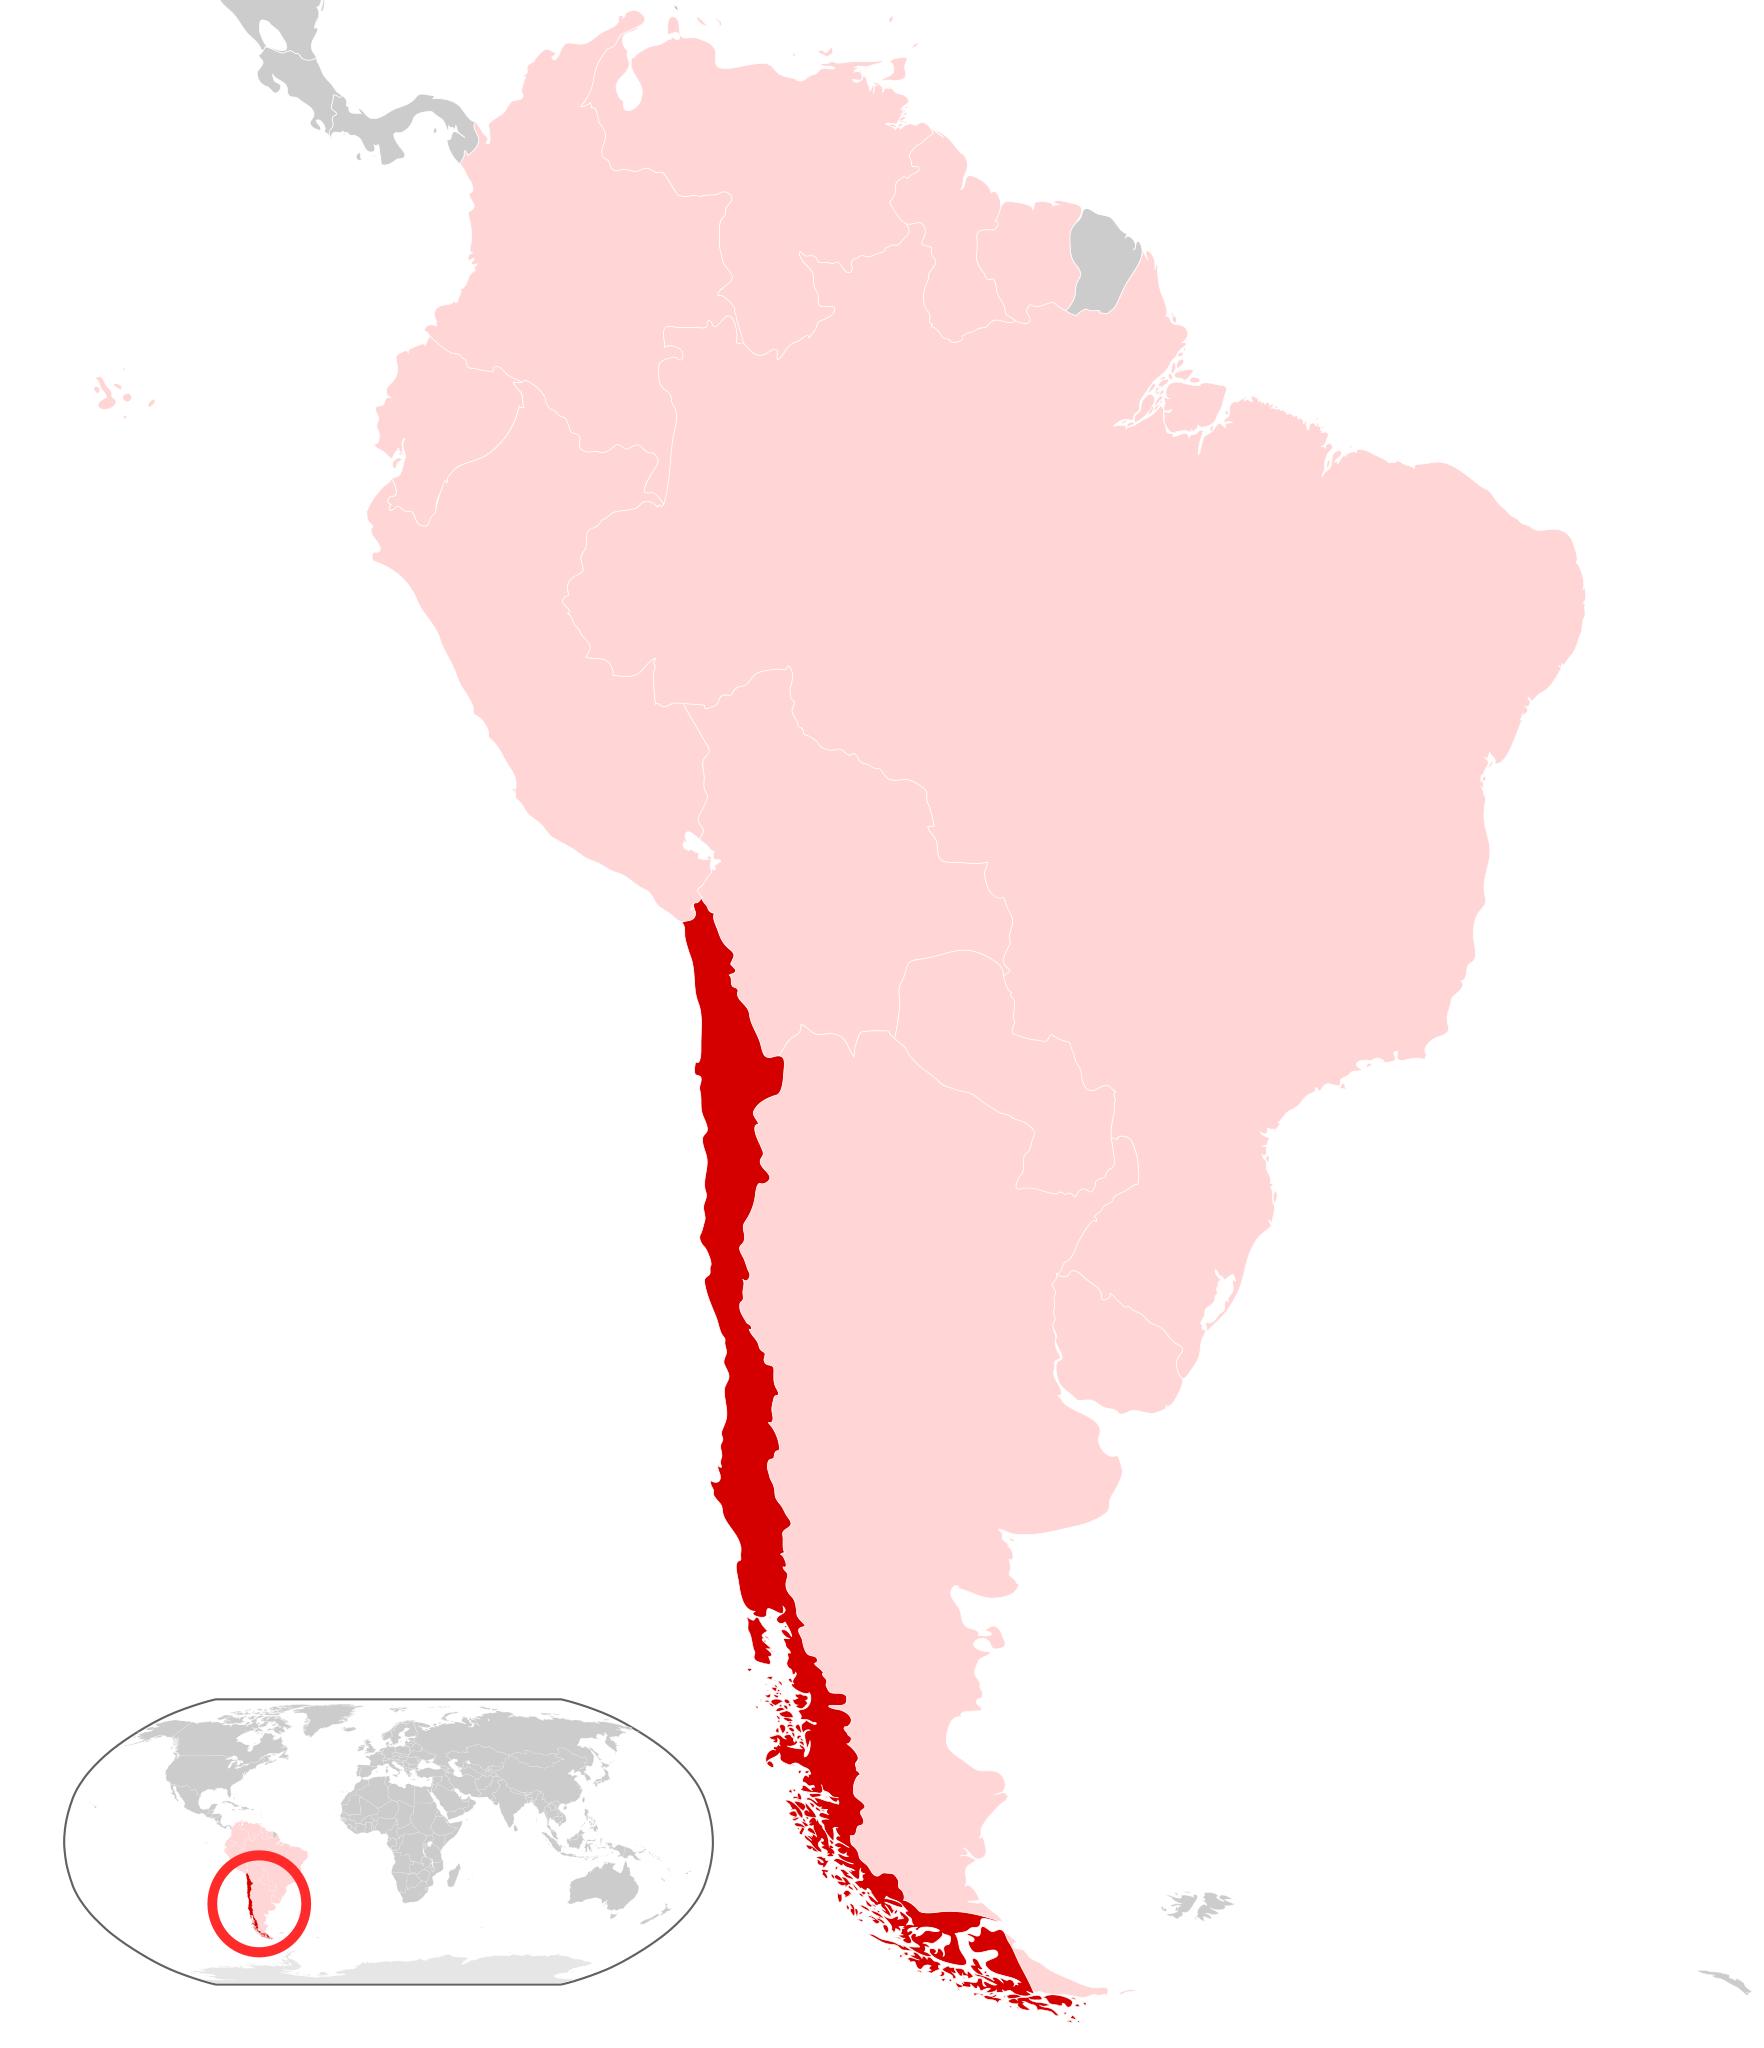 чили на карте южной америки